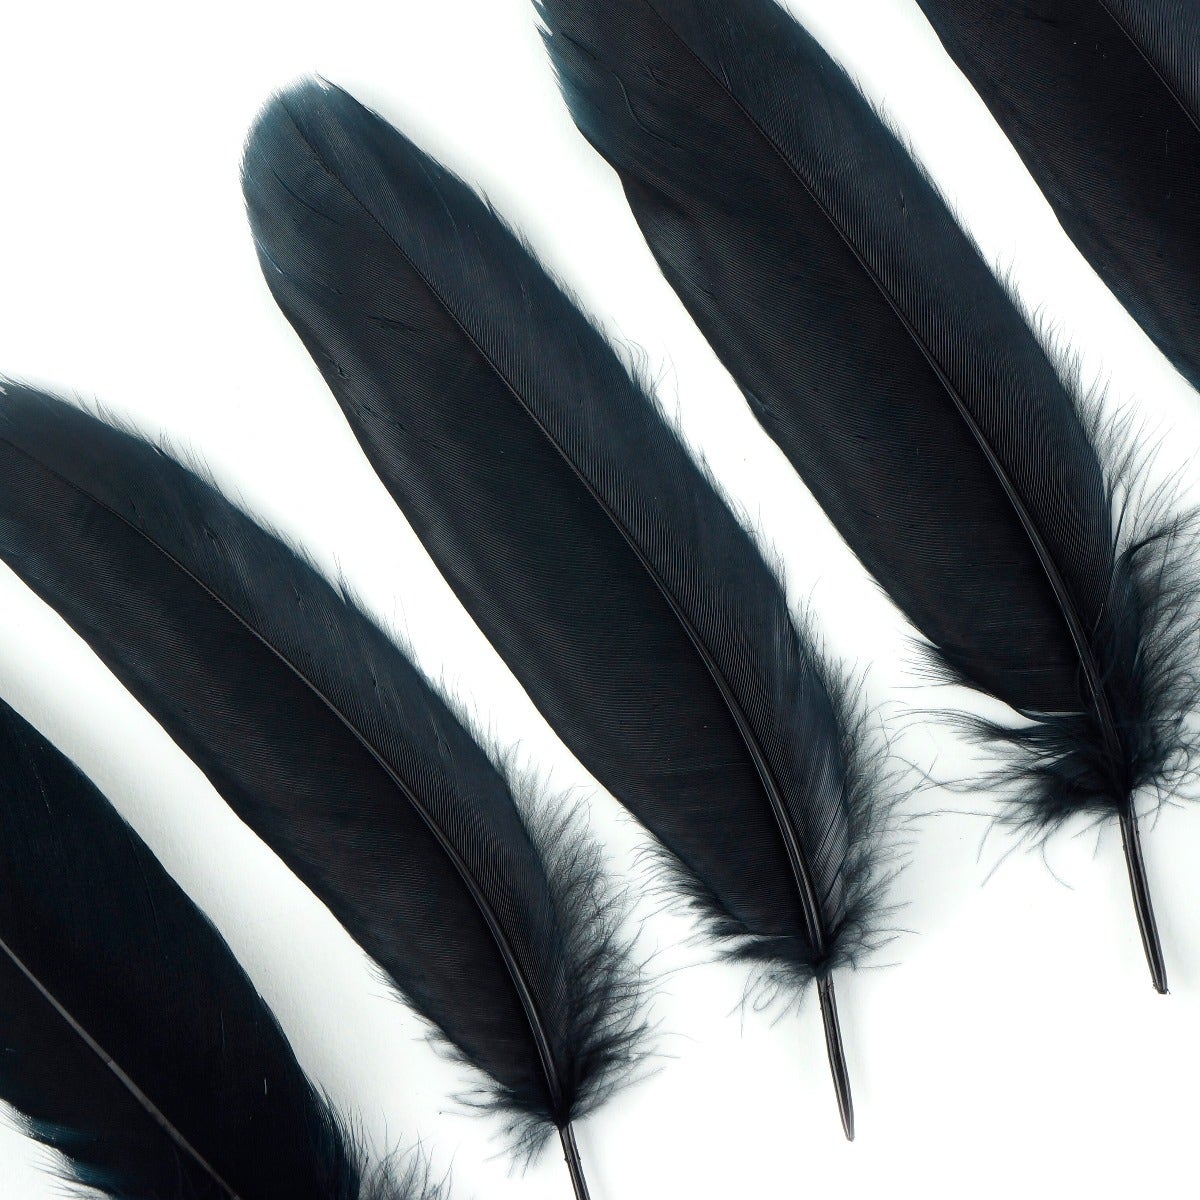 Goose Pallet Feathers 6-8" - 12 pc - Black